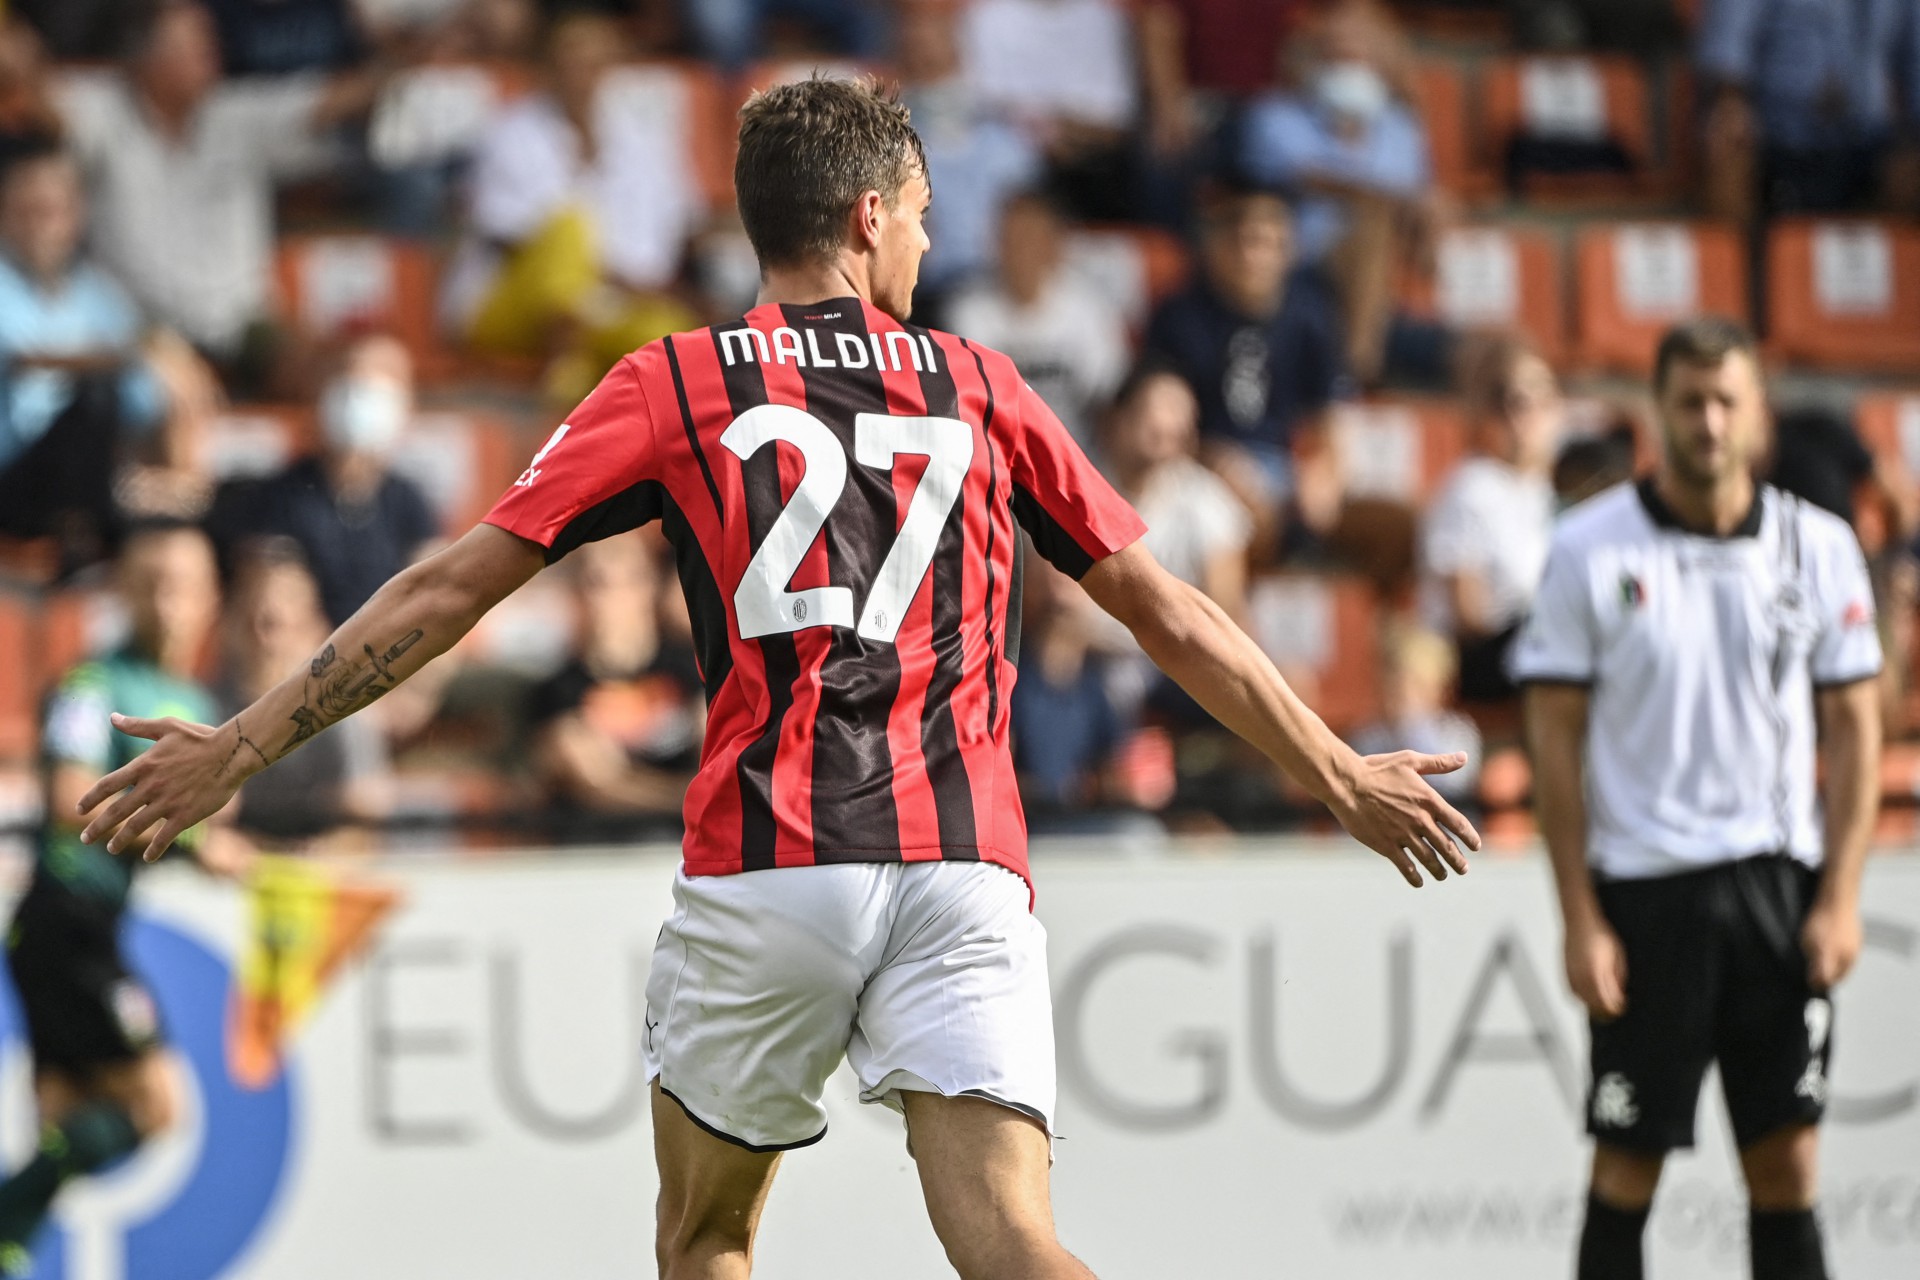 Terceira geração: Filho de Paolo Maldini marca, e Milan vence o Spezia no Italiano